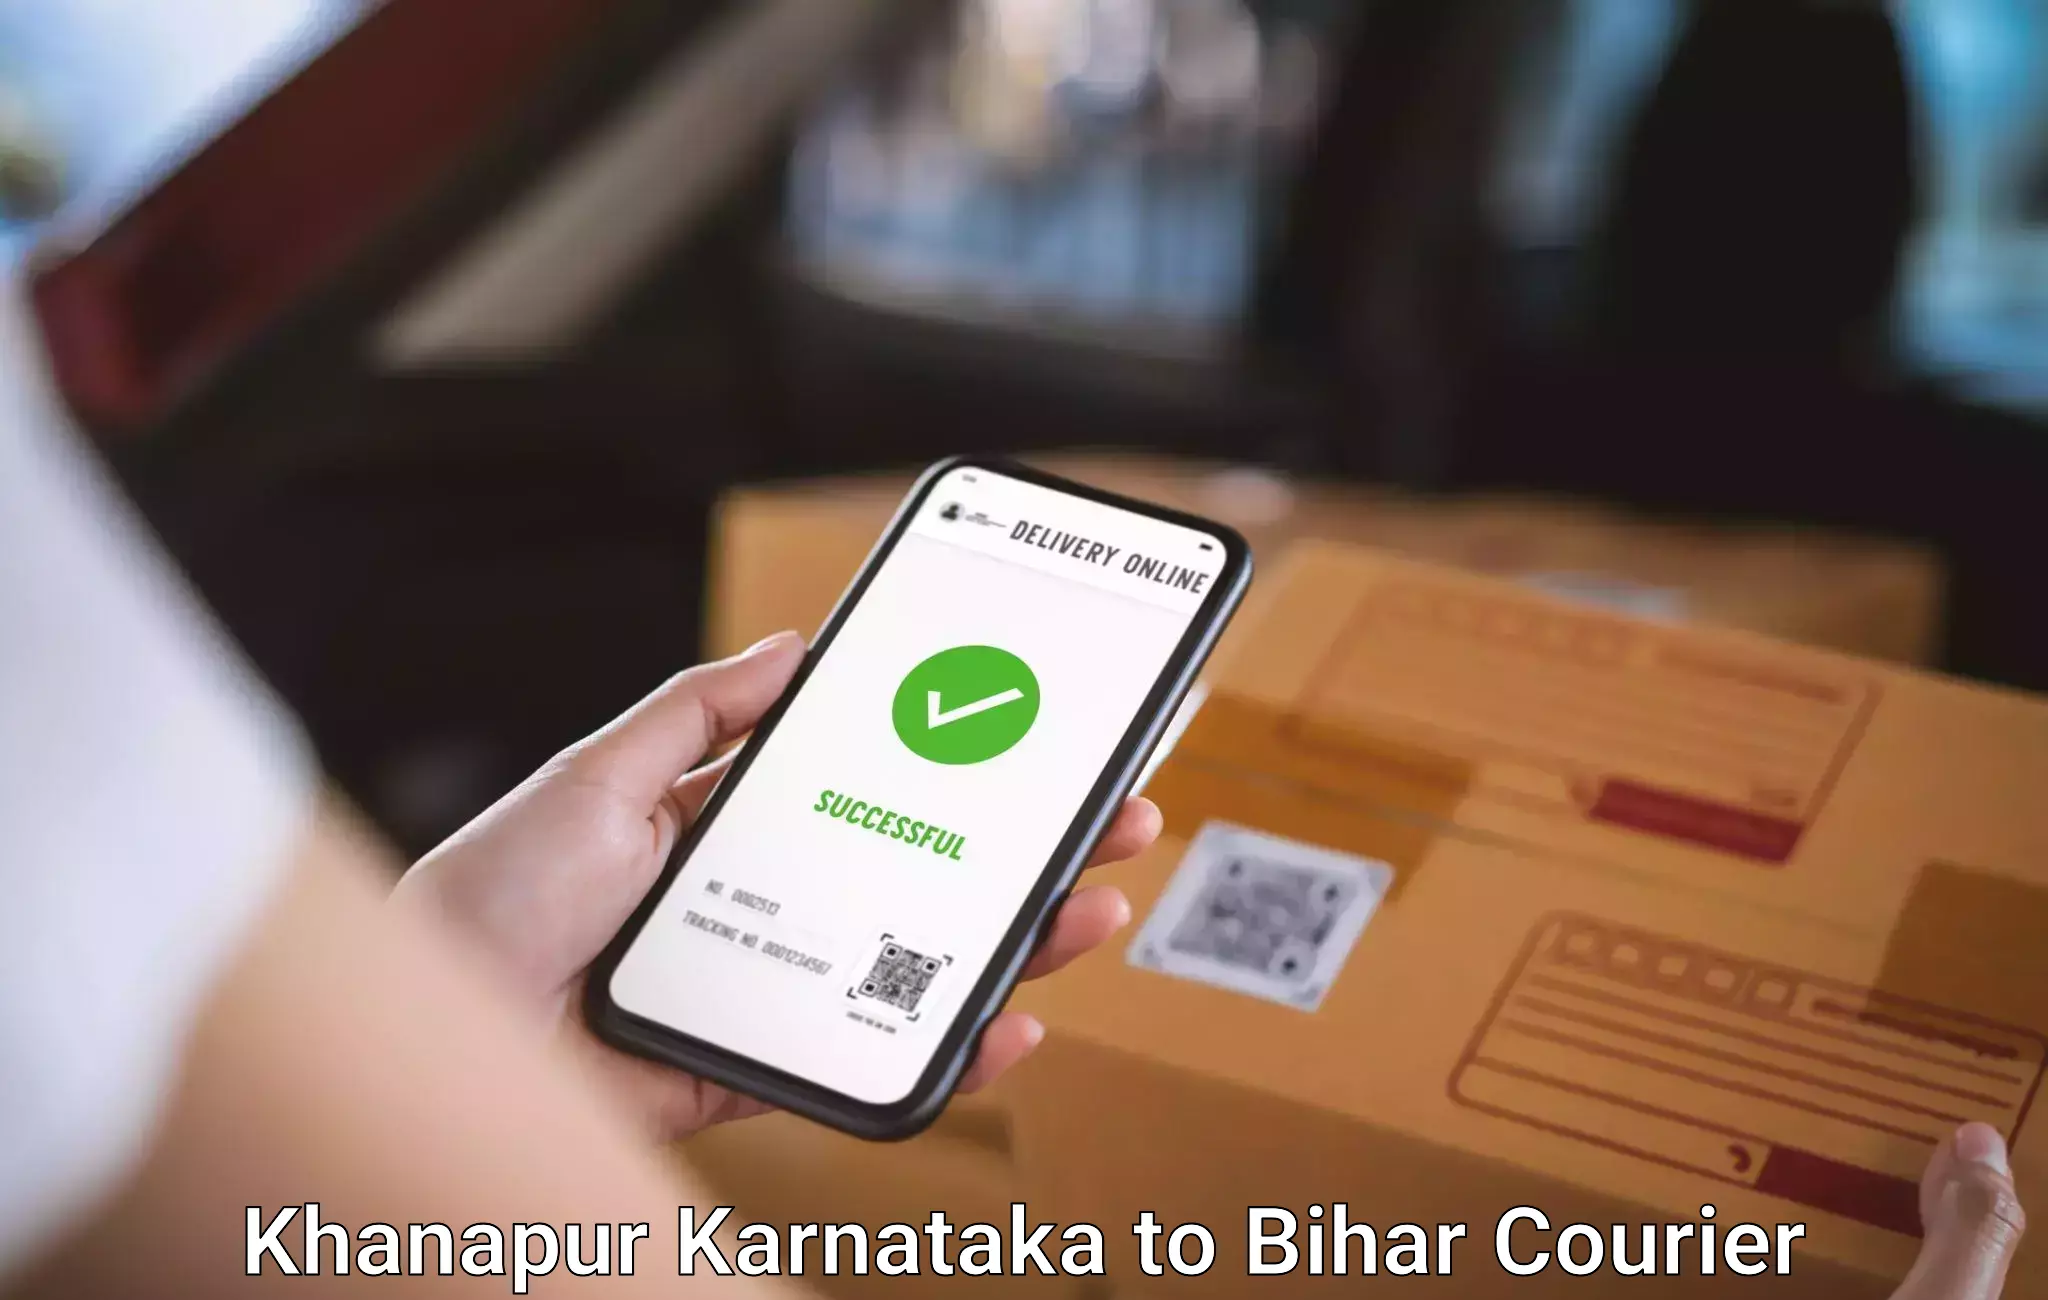 Luggage transfer service Khanapur Karnataka to Kishunganj